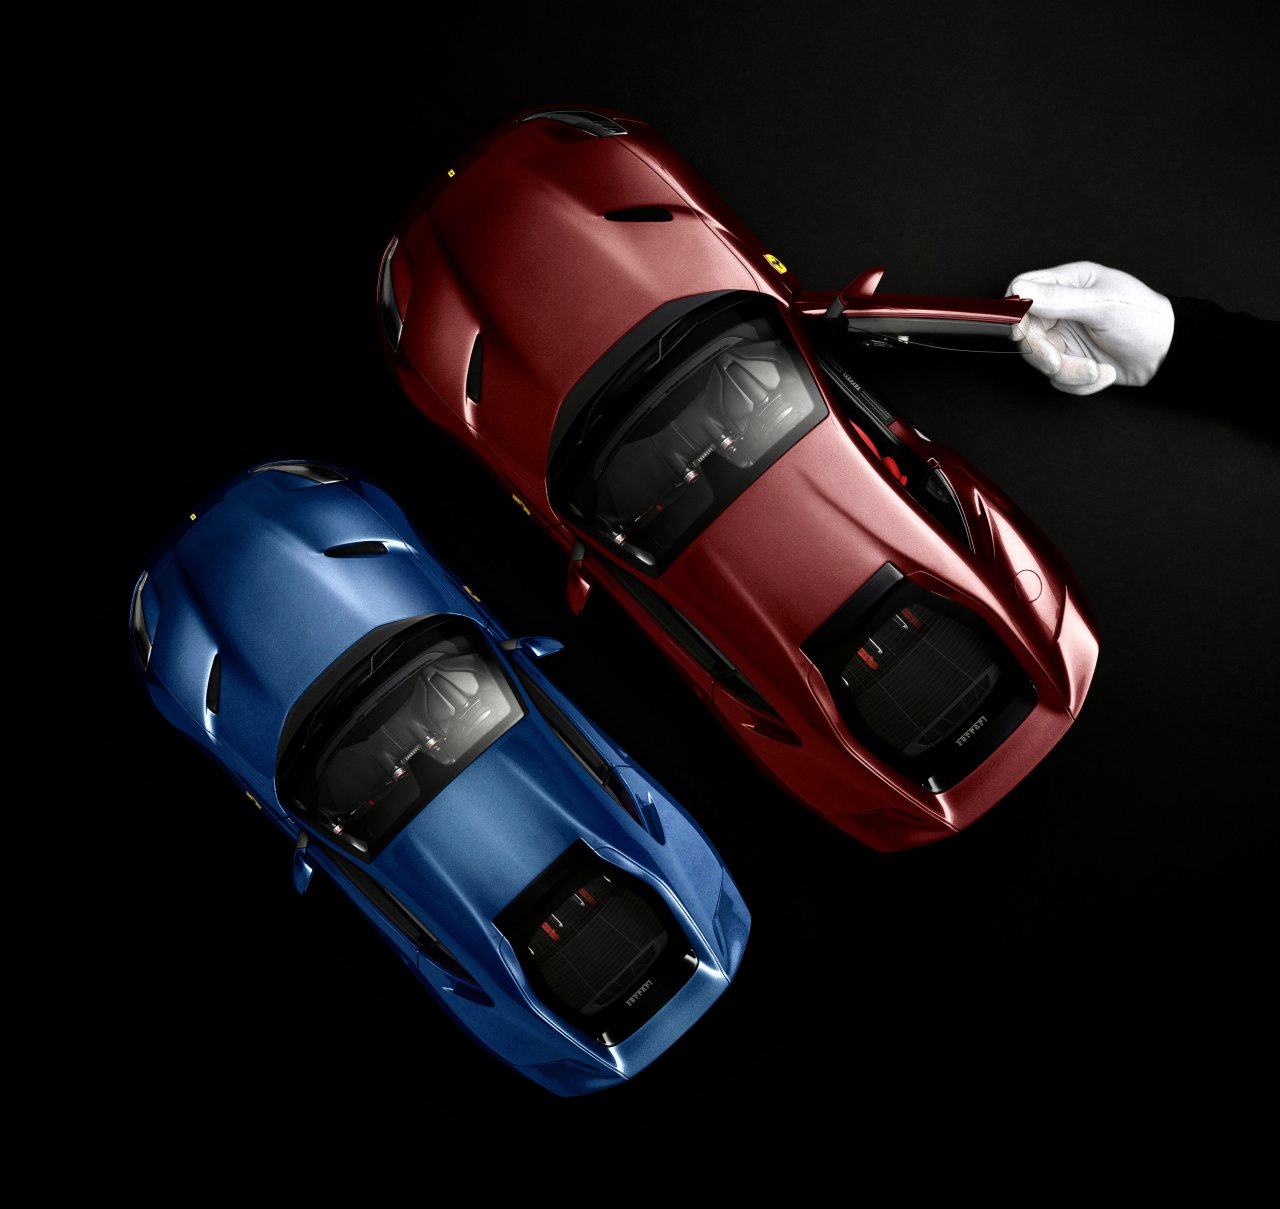 Ferrari, New Ferrari option: Your car in 1:8 or 1:12 scale, ClassicCars.com Journal